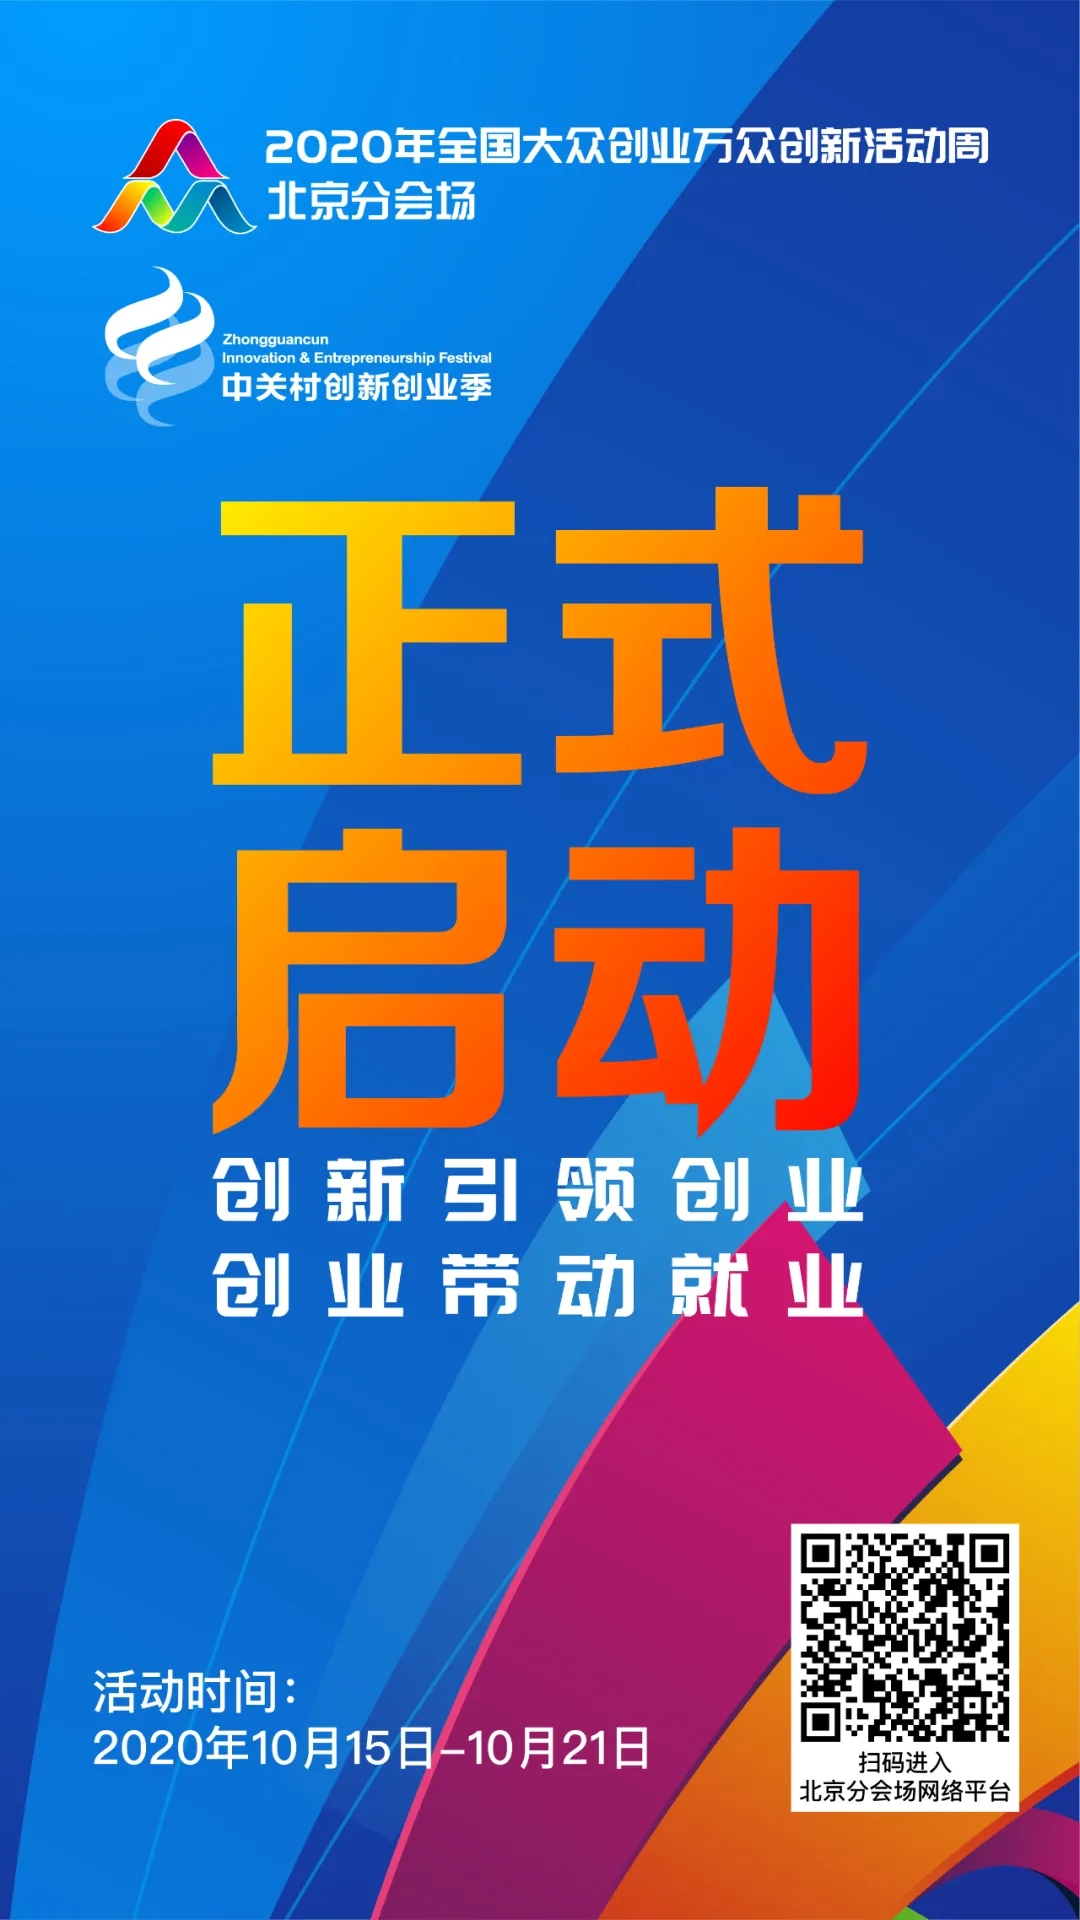 2020年全国双创周北京分会场活动10月15日正式启动